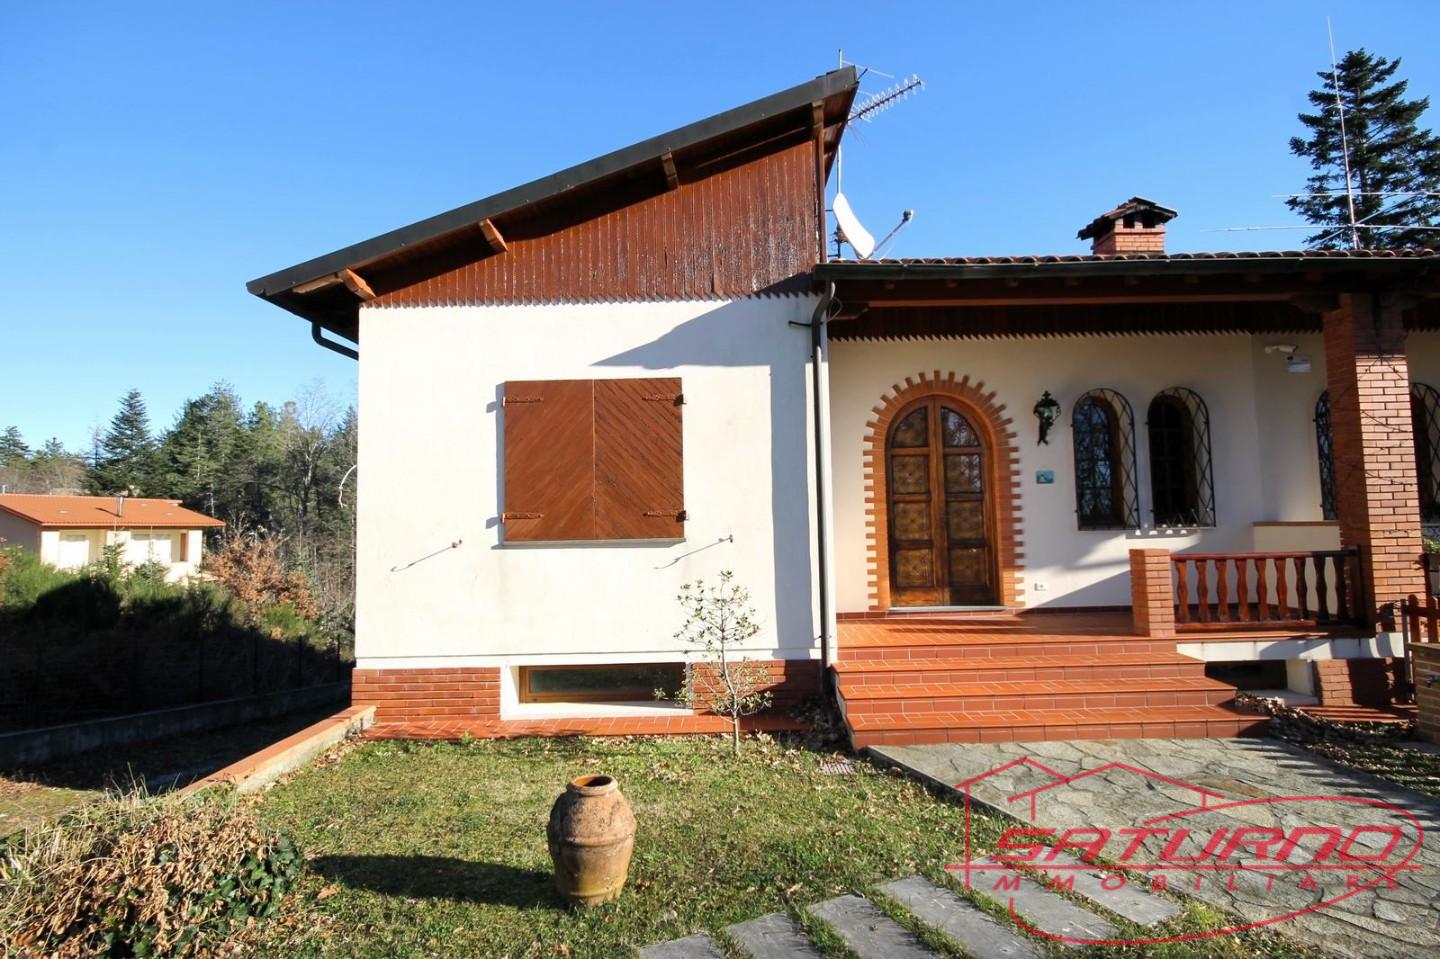 Villa Bifamiliare in vendita a Villa Basilica, 6 locali, prezzo € 165.000 | PortaleAgenzieImmobiliari.it